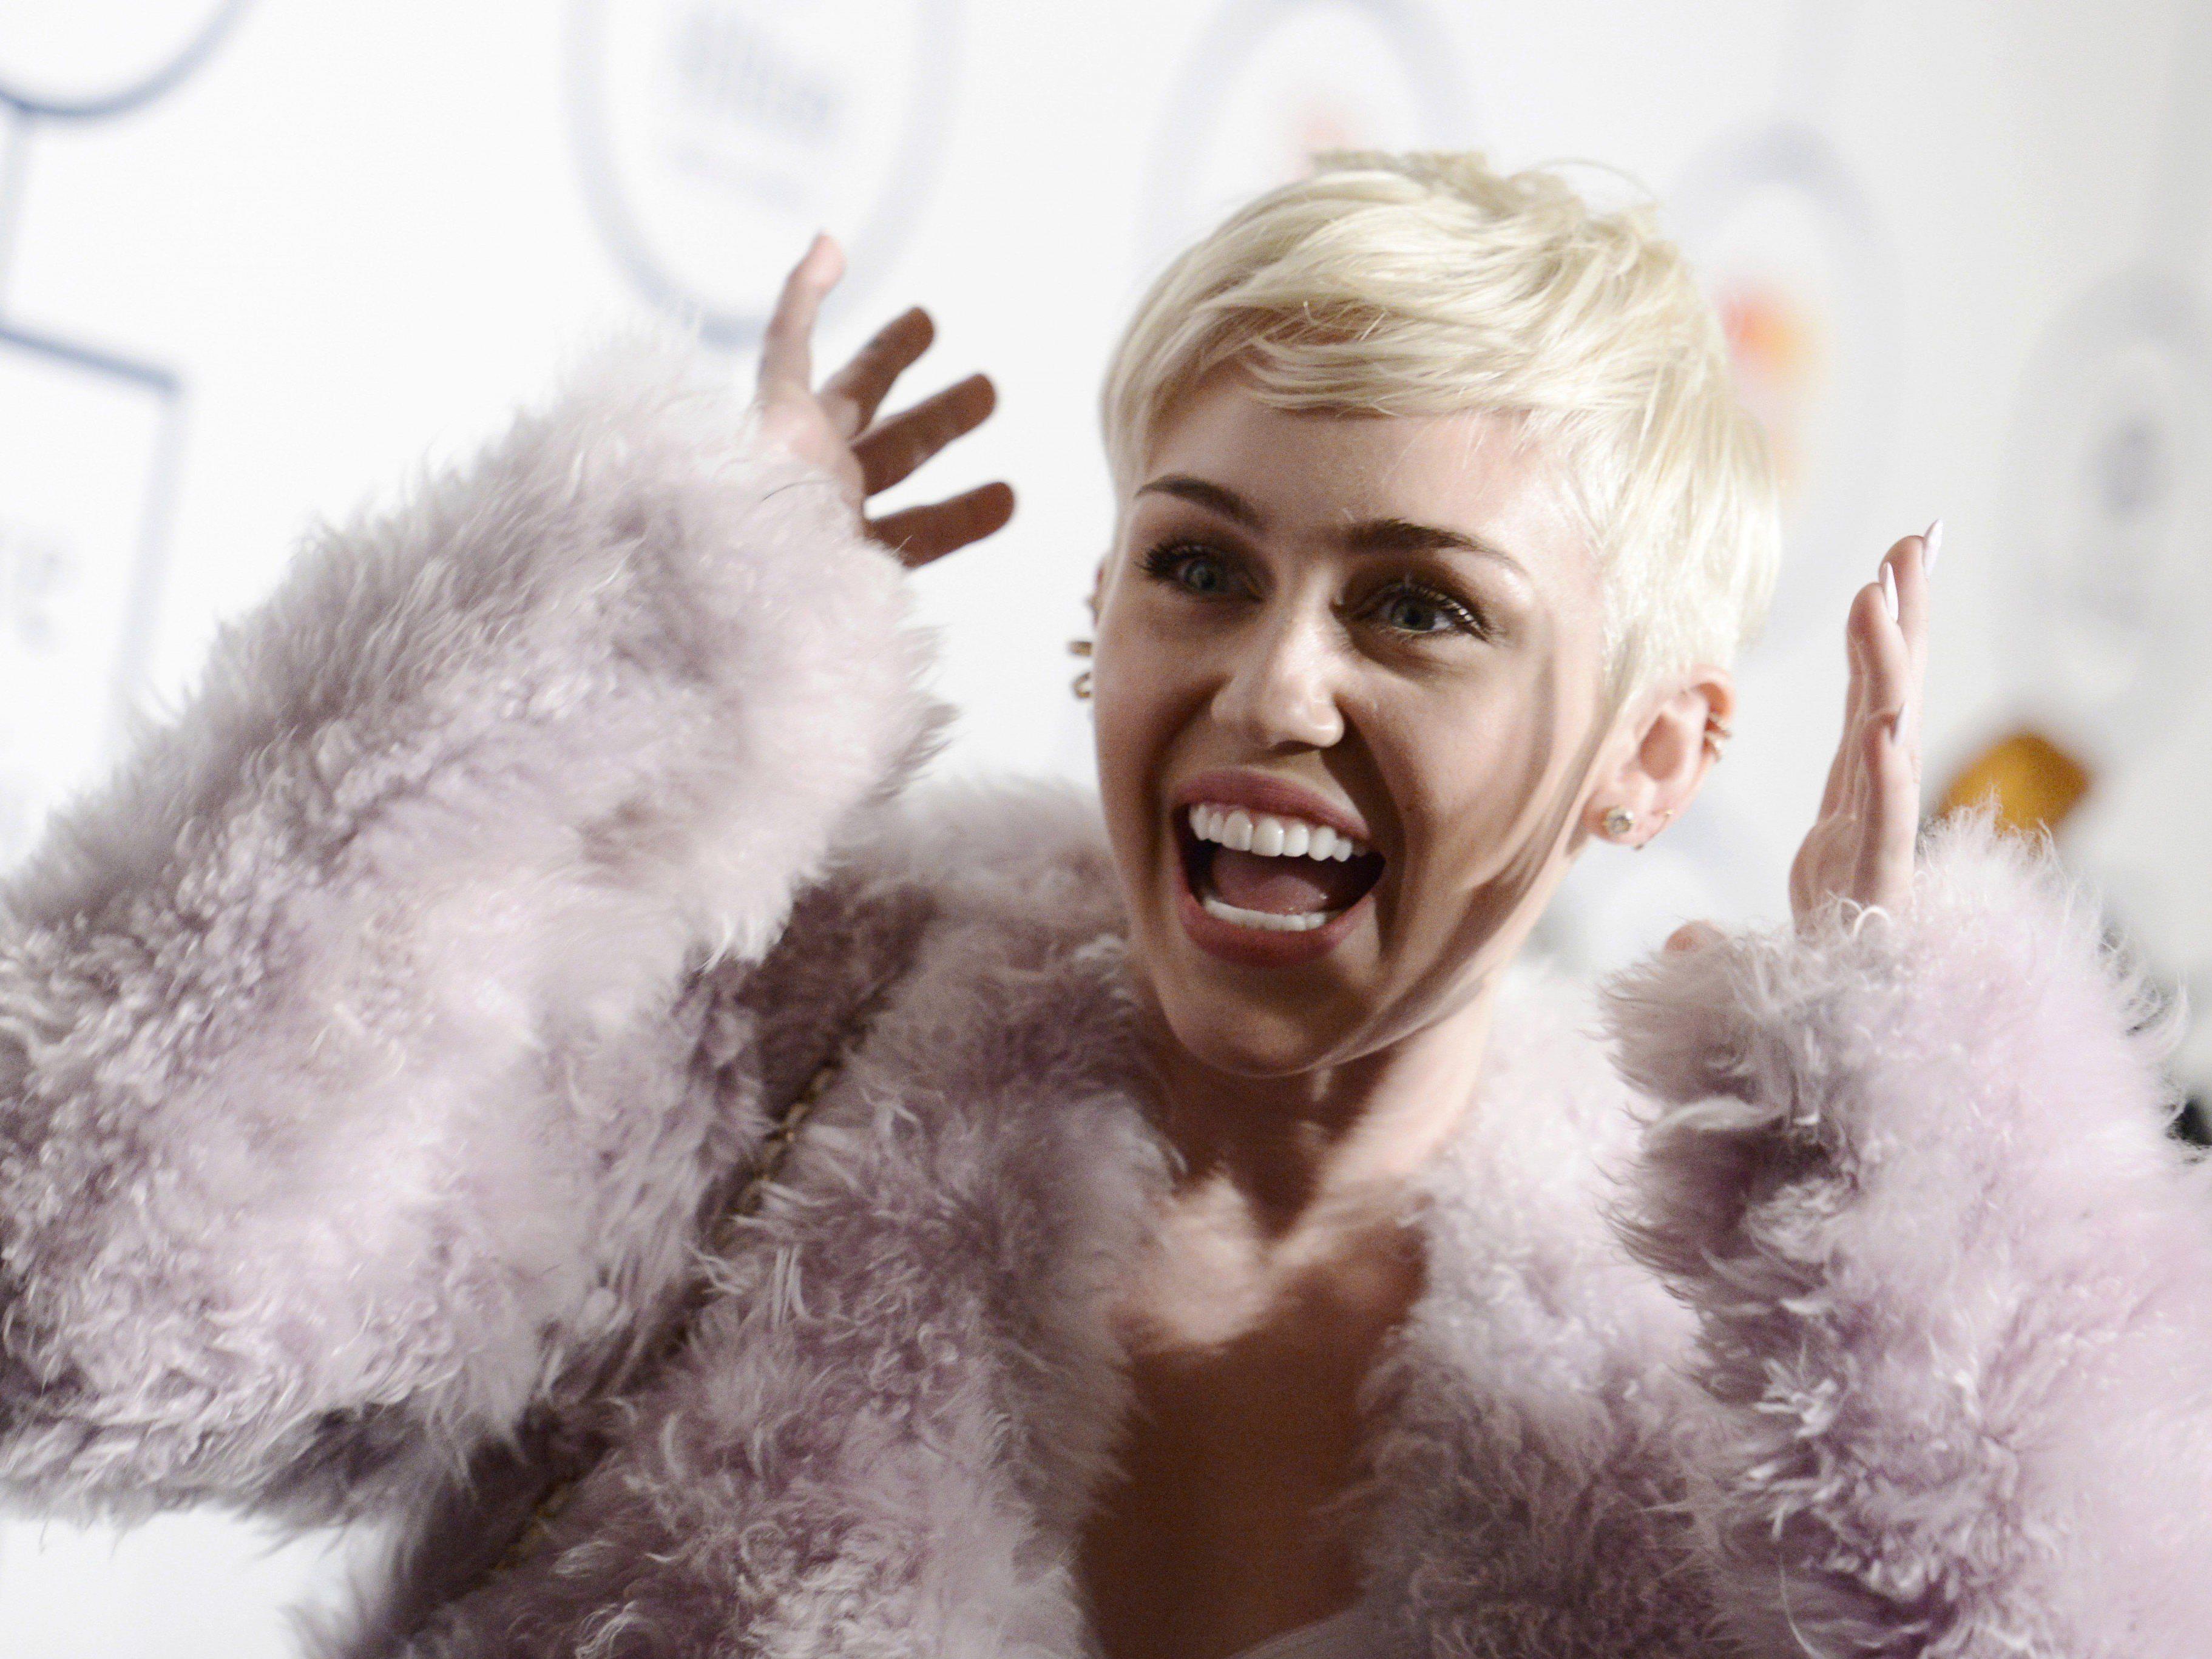 Miley Cyrus zeigt sich oben ohne im Netz - und das aus gutem Grund.